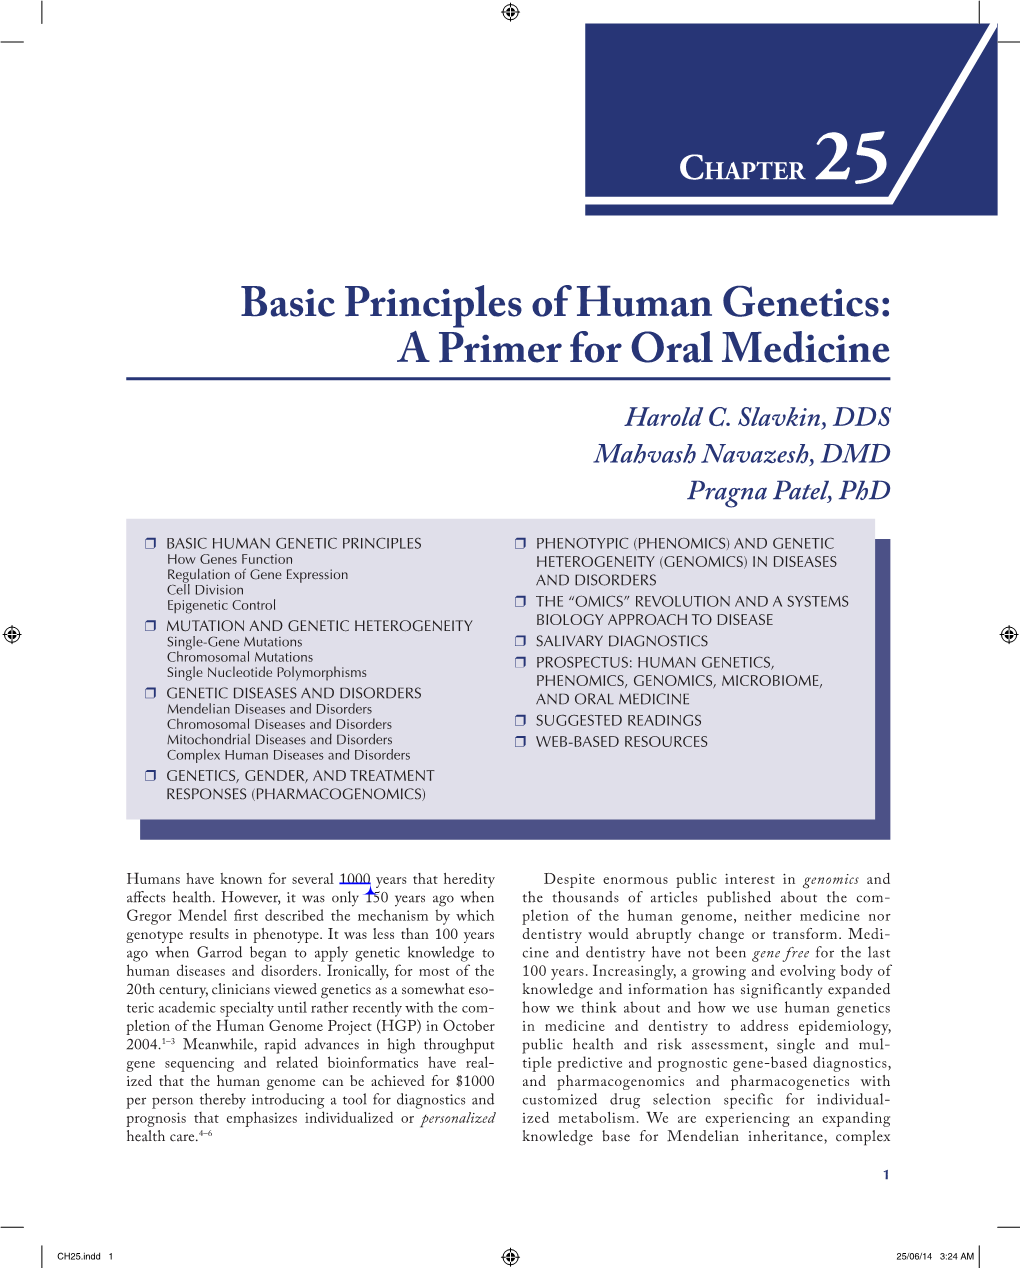 Basic Principles of Human Genetics: a Primer for Oral Medicine Harold C